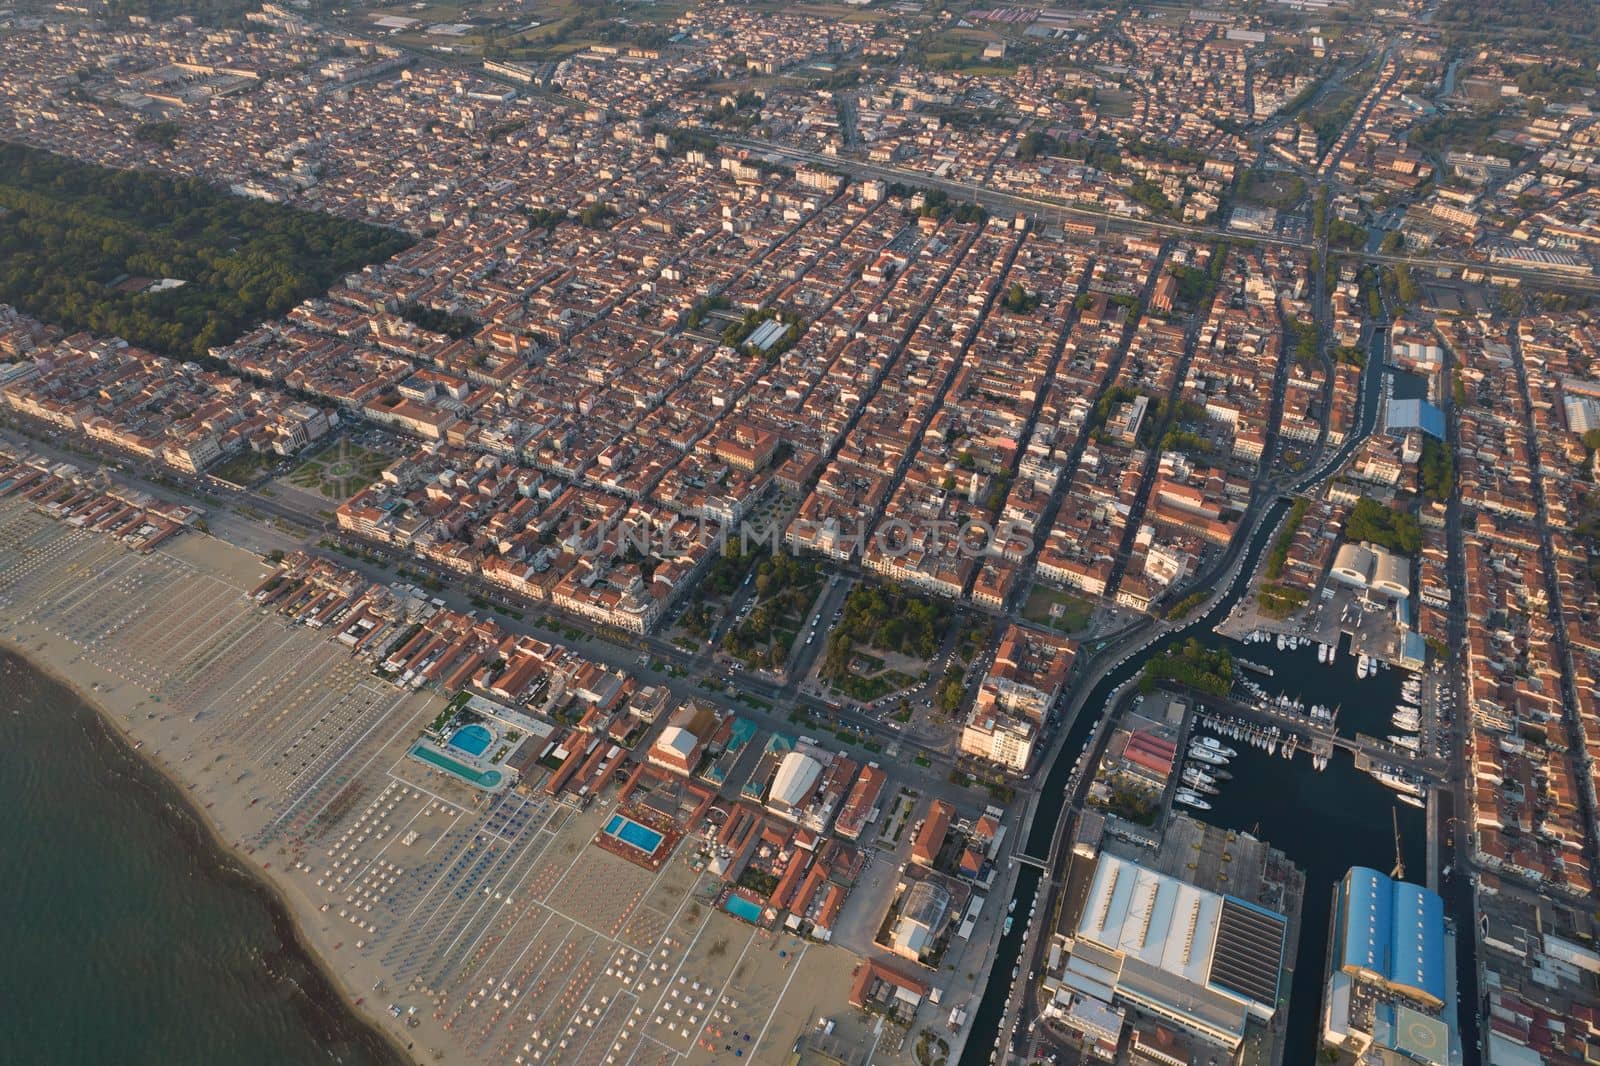 Aerial view of the city of Viareggio Italy by fotografiche.eu